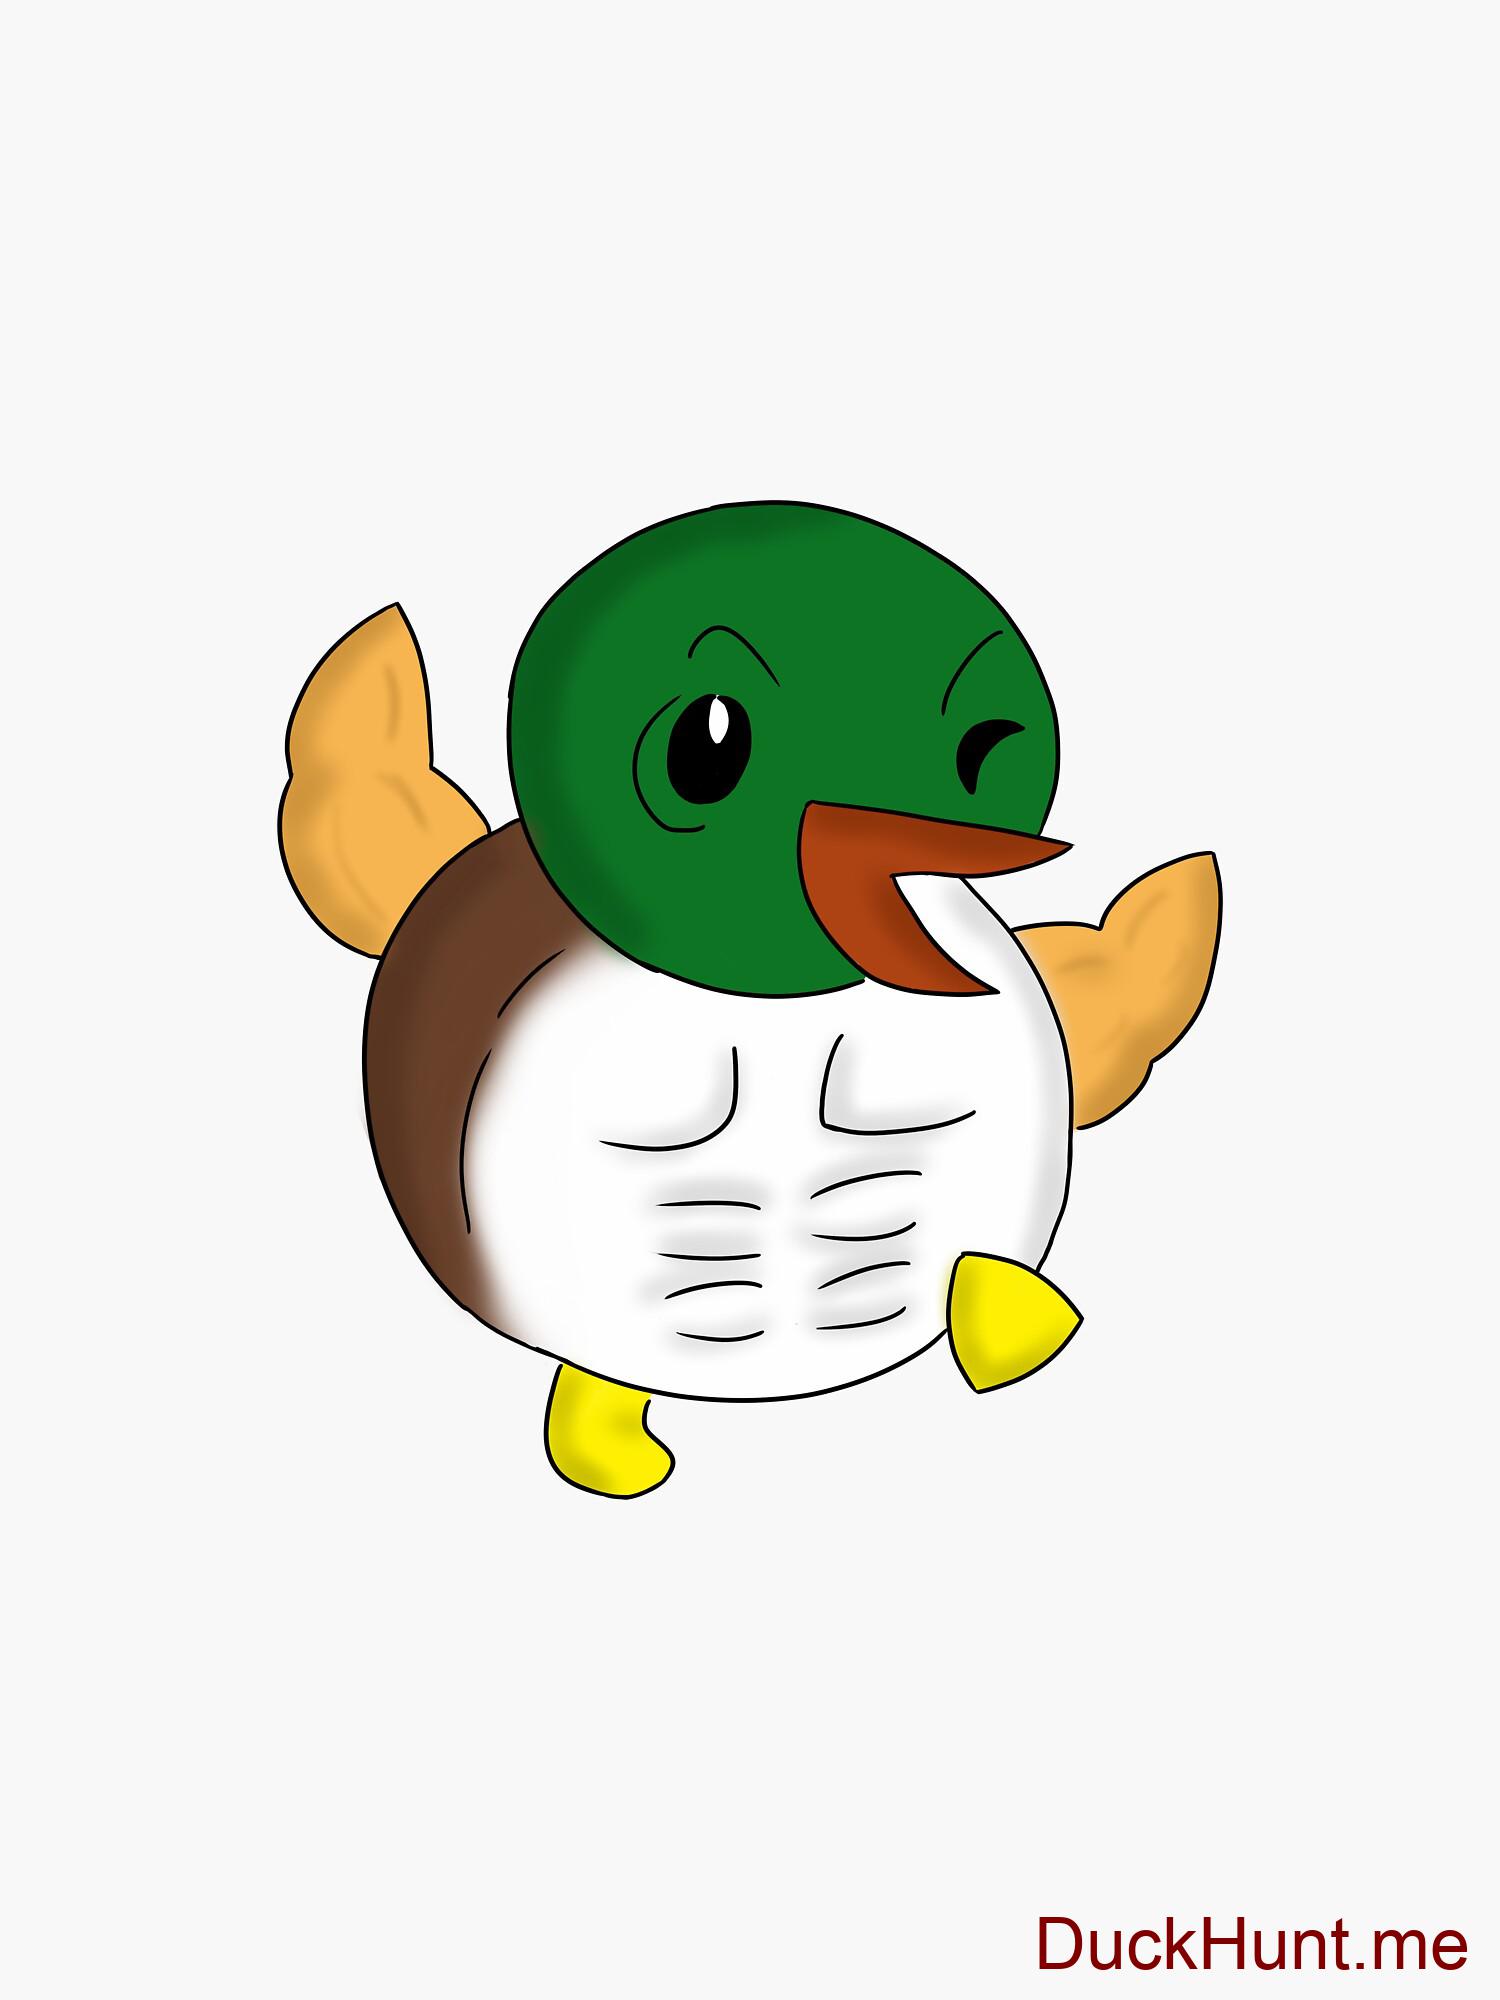 Super duck Sticker alternative image 2